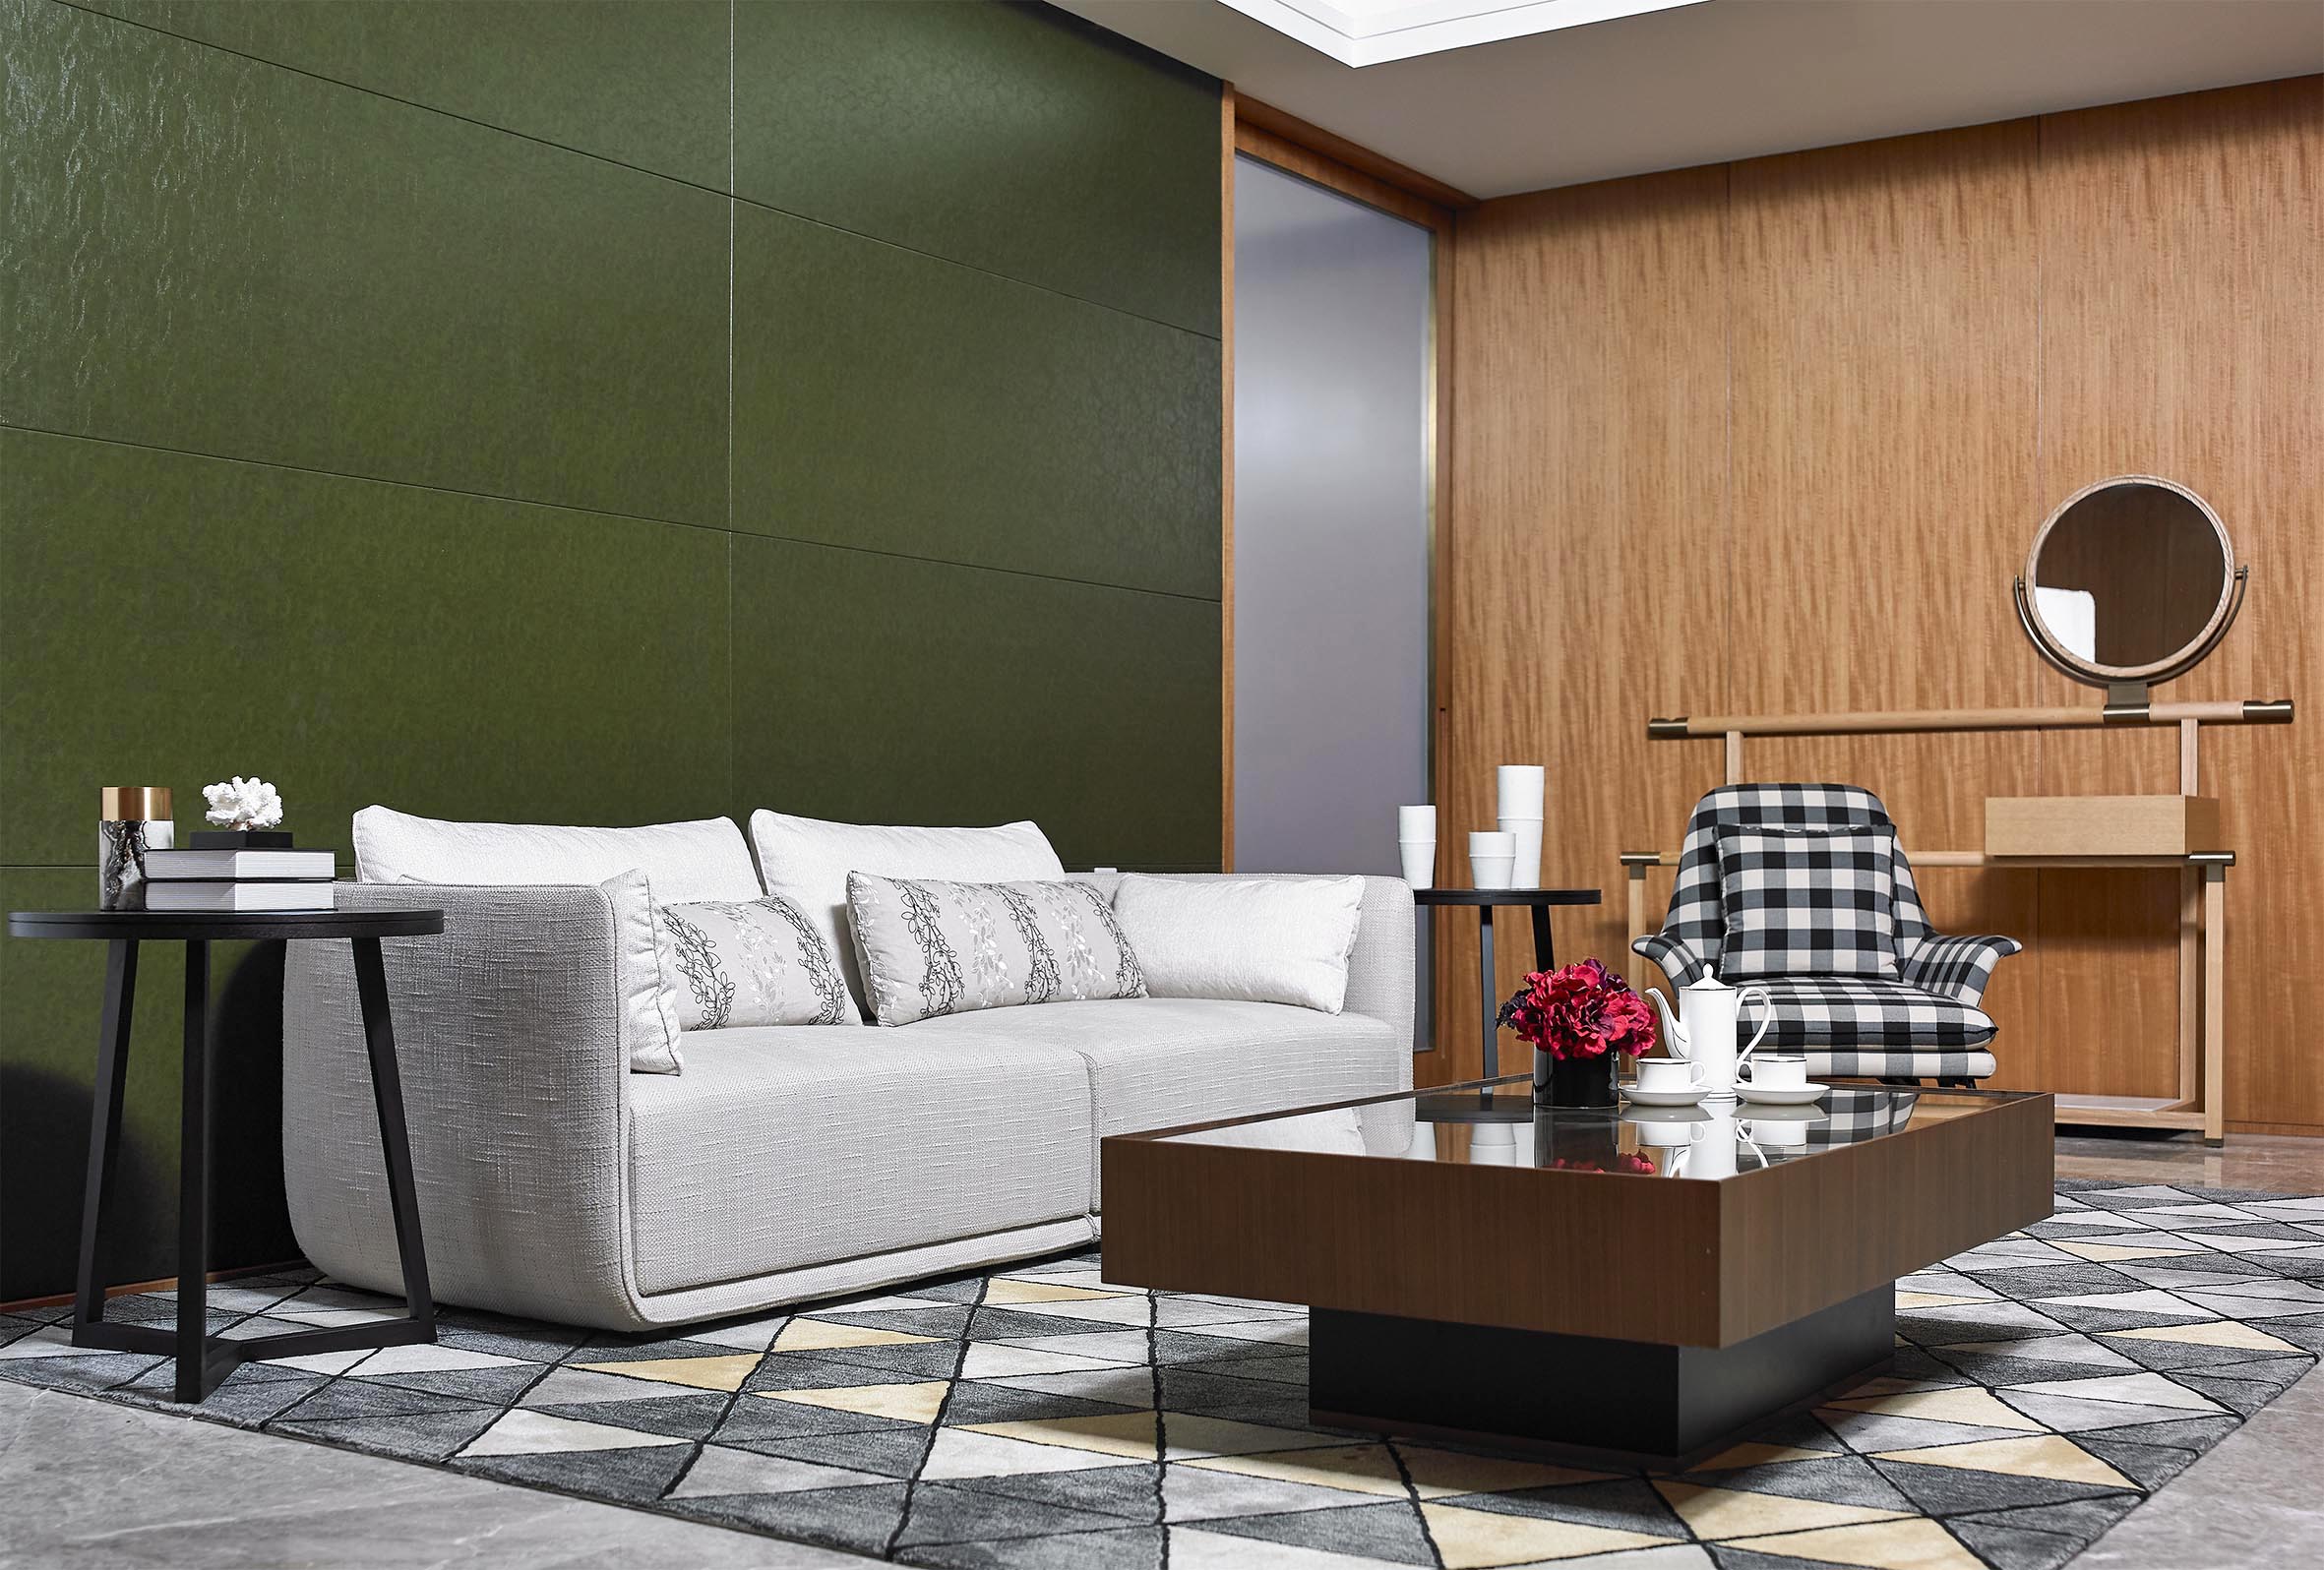 يمكن تخصيص تصميم حديث أريكة مجموعة أثاث غرفة المعيشة الفاخرة السكنية